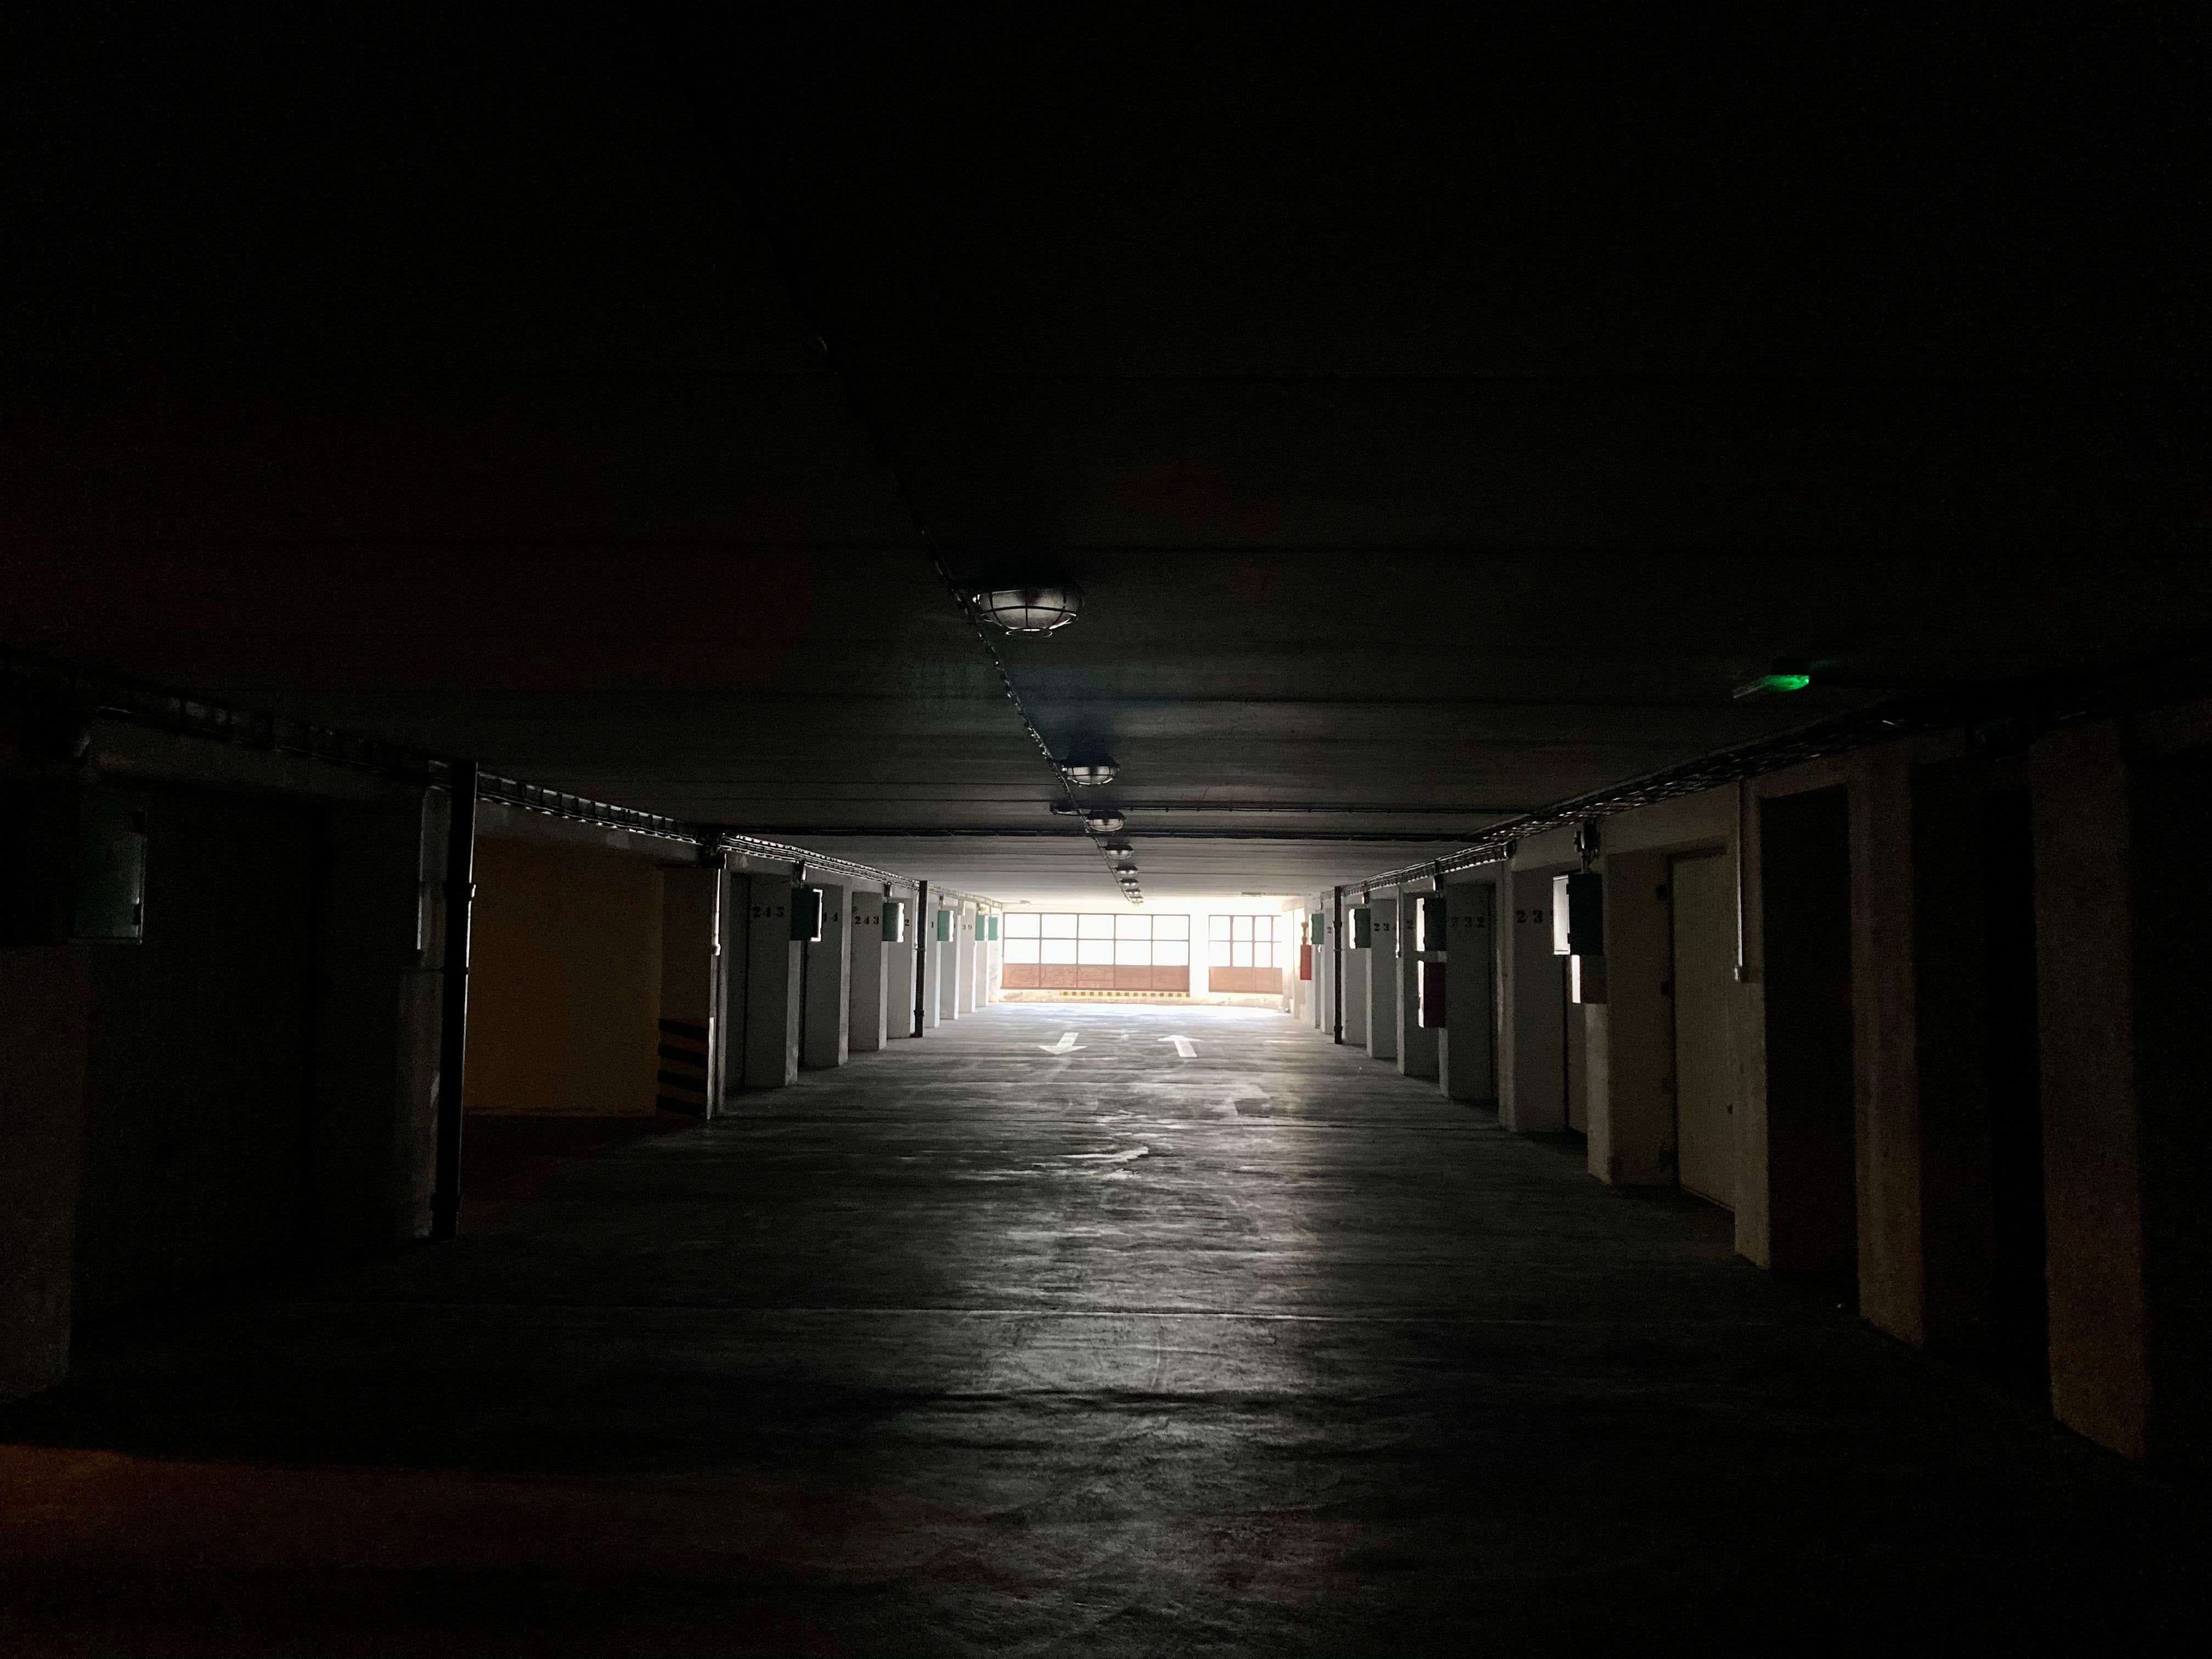 Leuchte am Ende eines Garagen